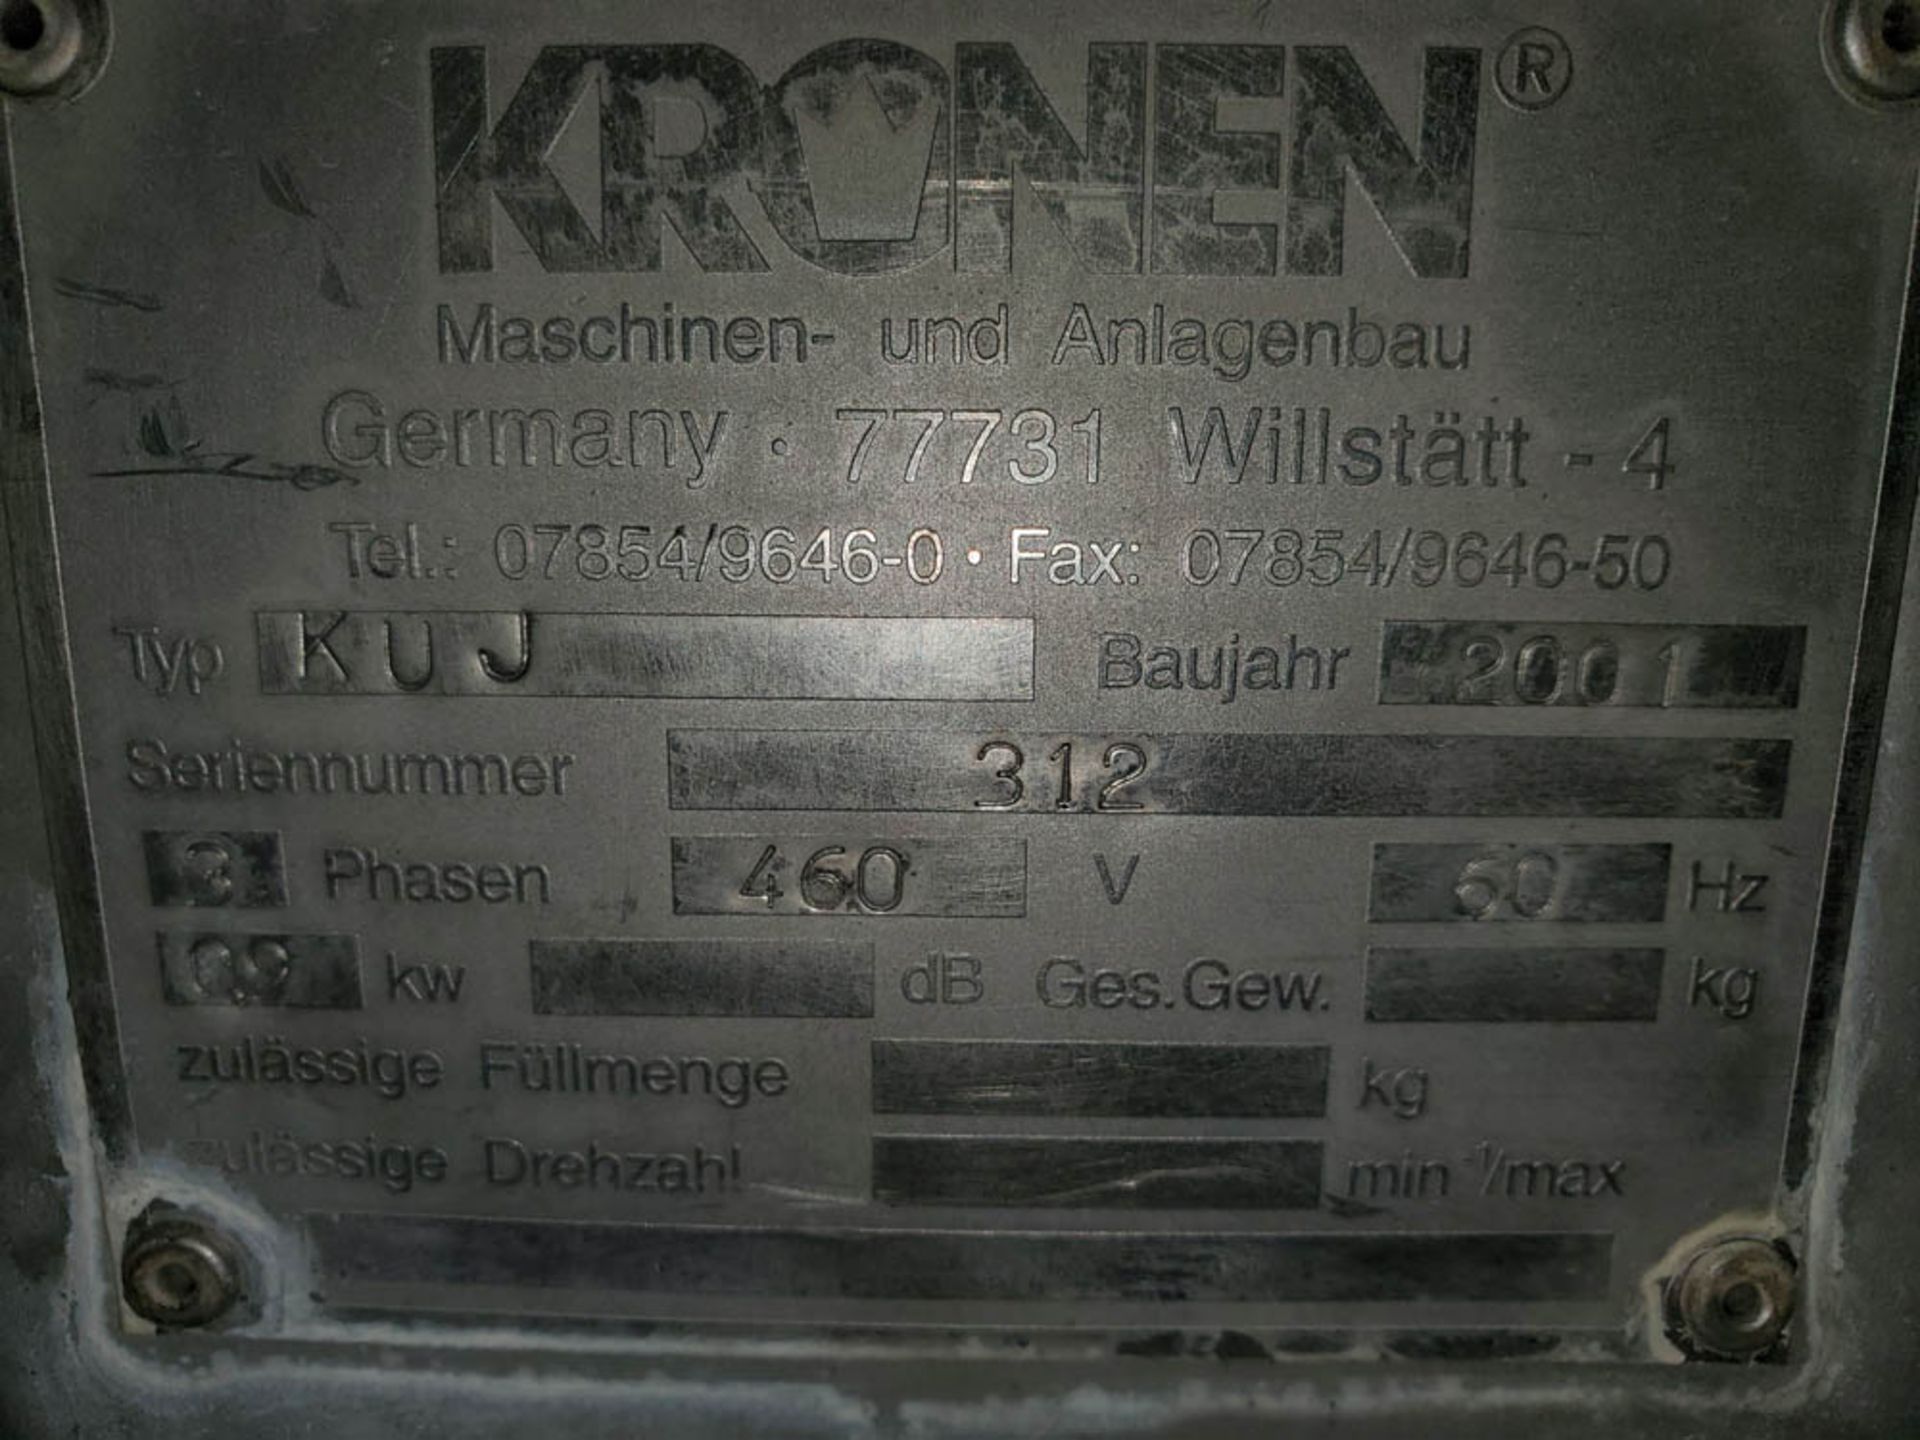 2001 Kronen KUJ Dicer, Slicer, Strip Cutter - Image 2 of 12